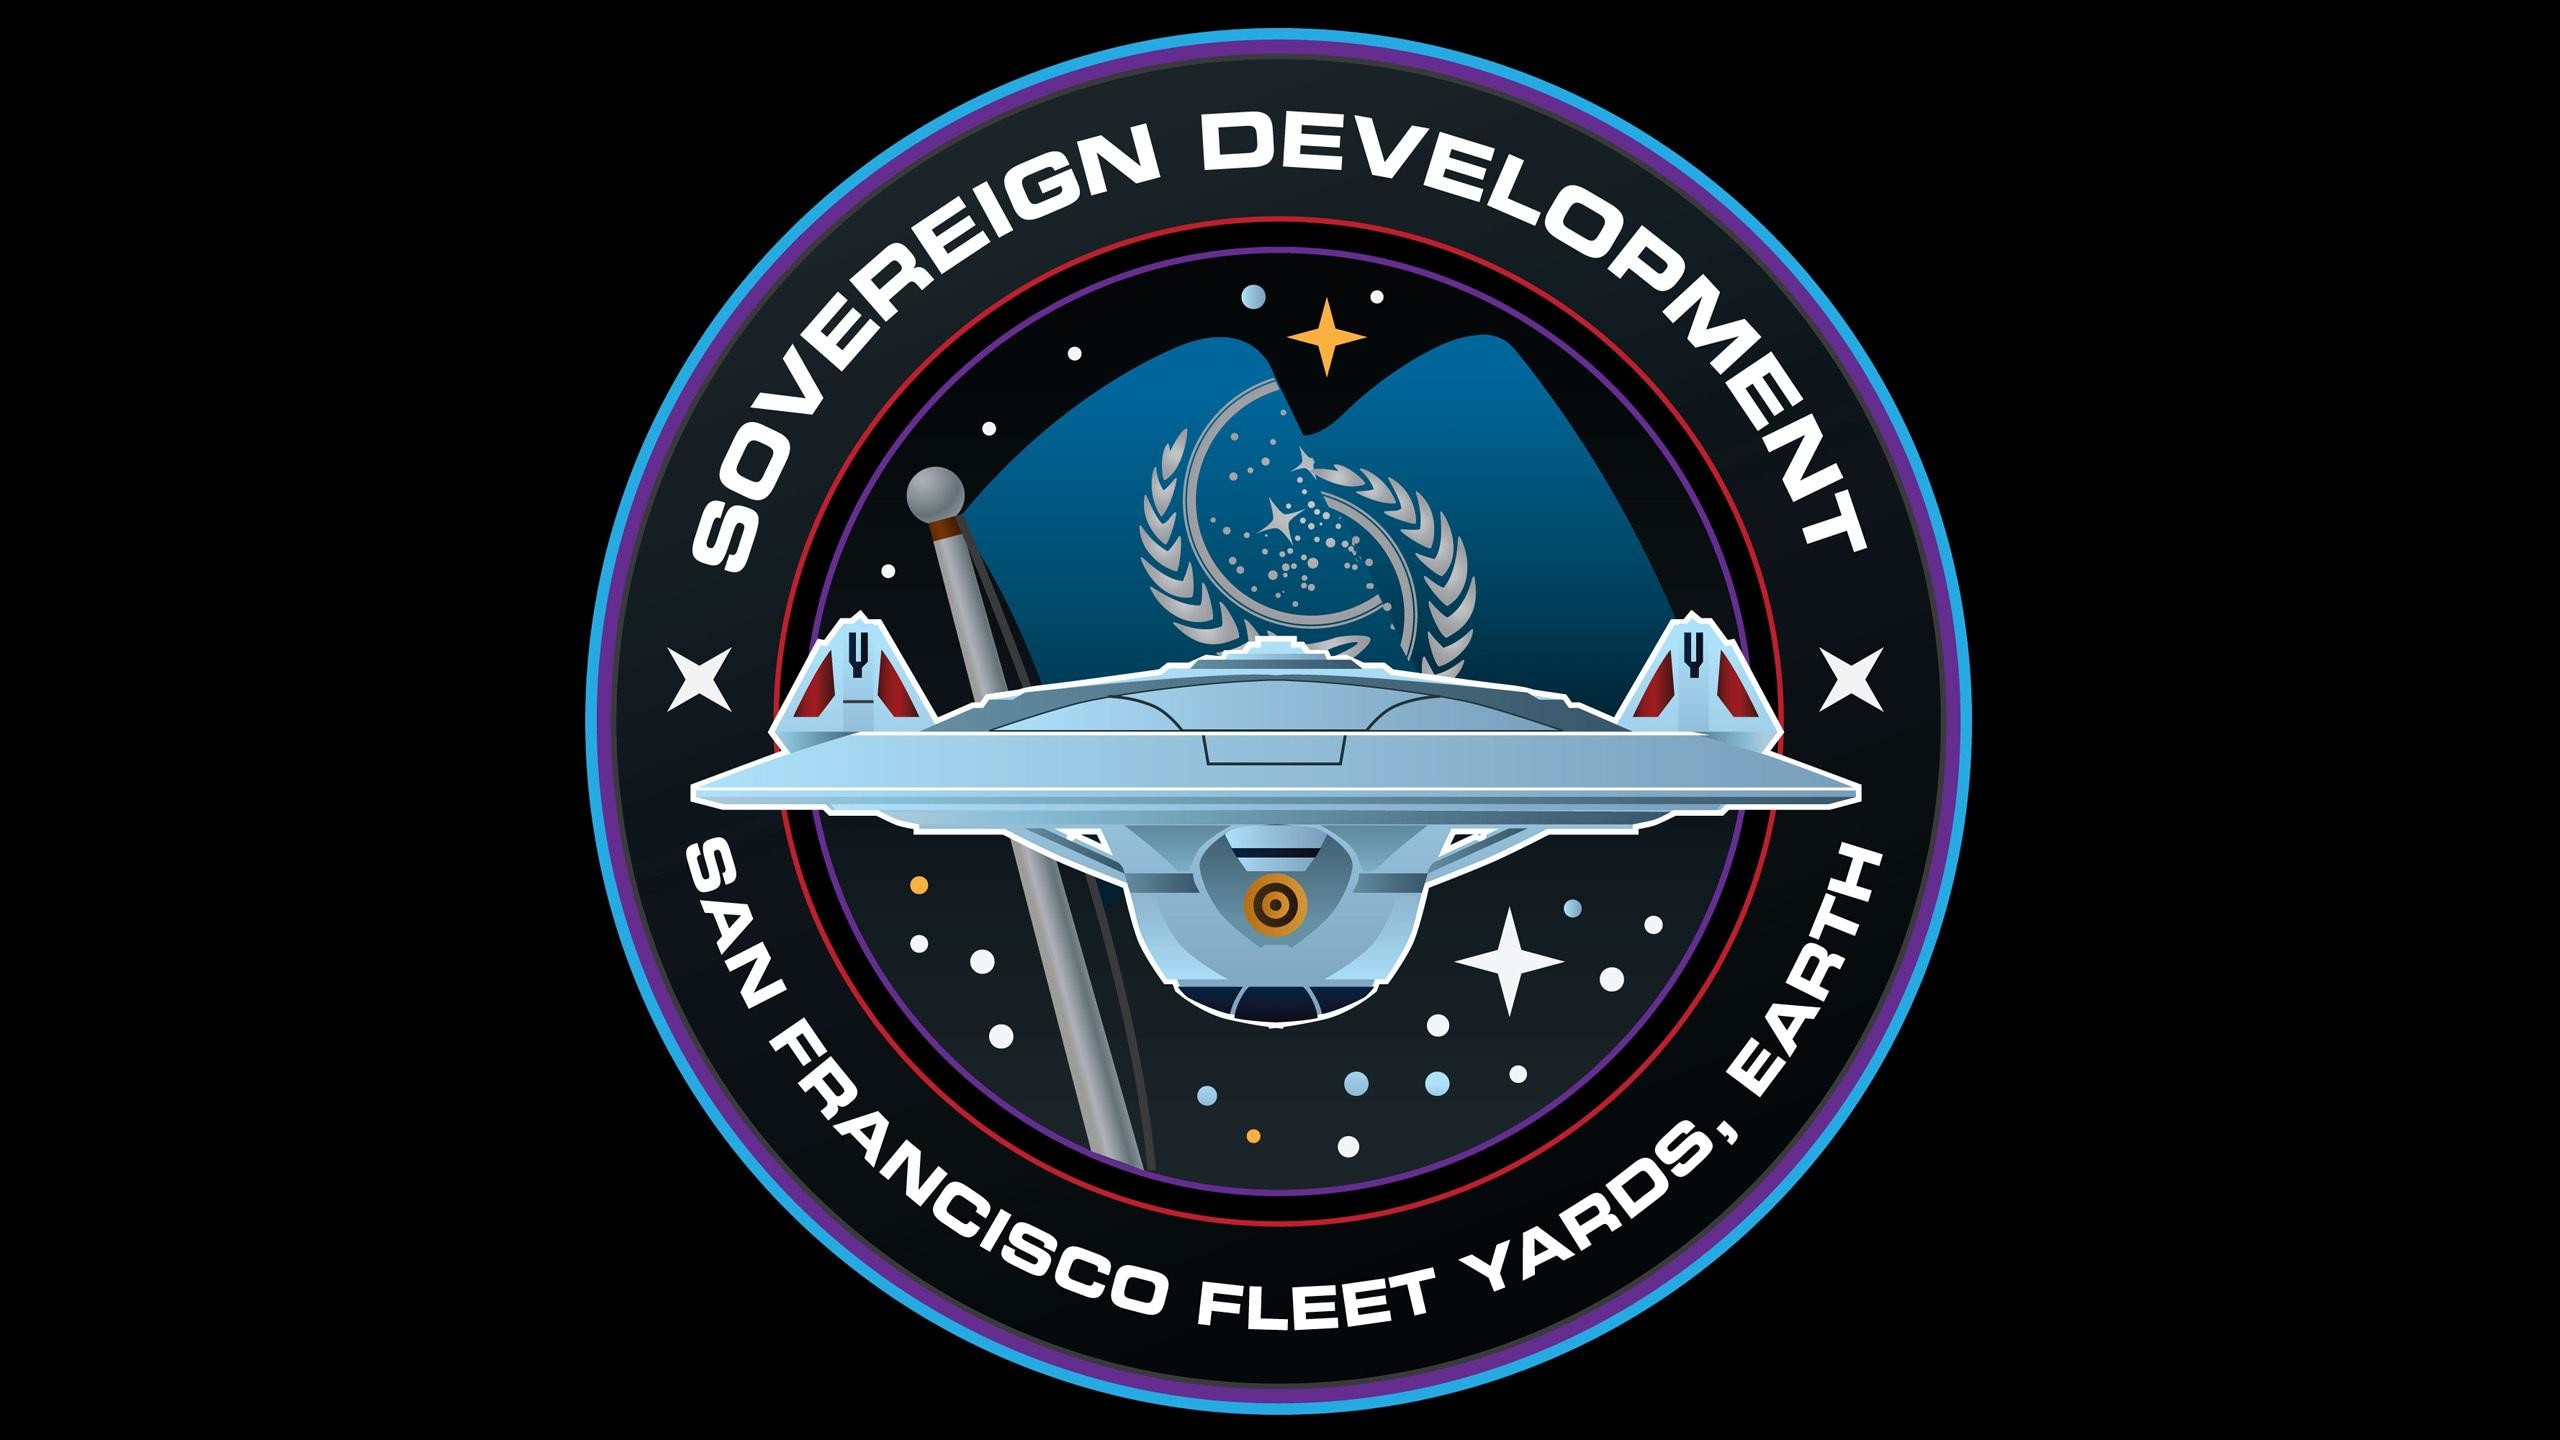 2560x1440 HD Sovereign Development - Star Trek Wallpaper